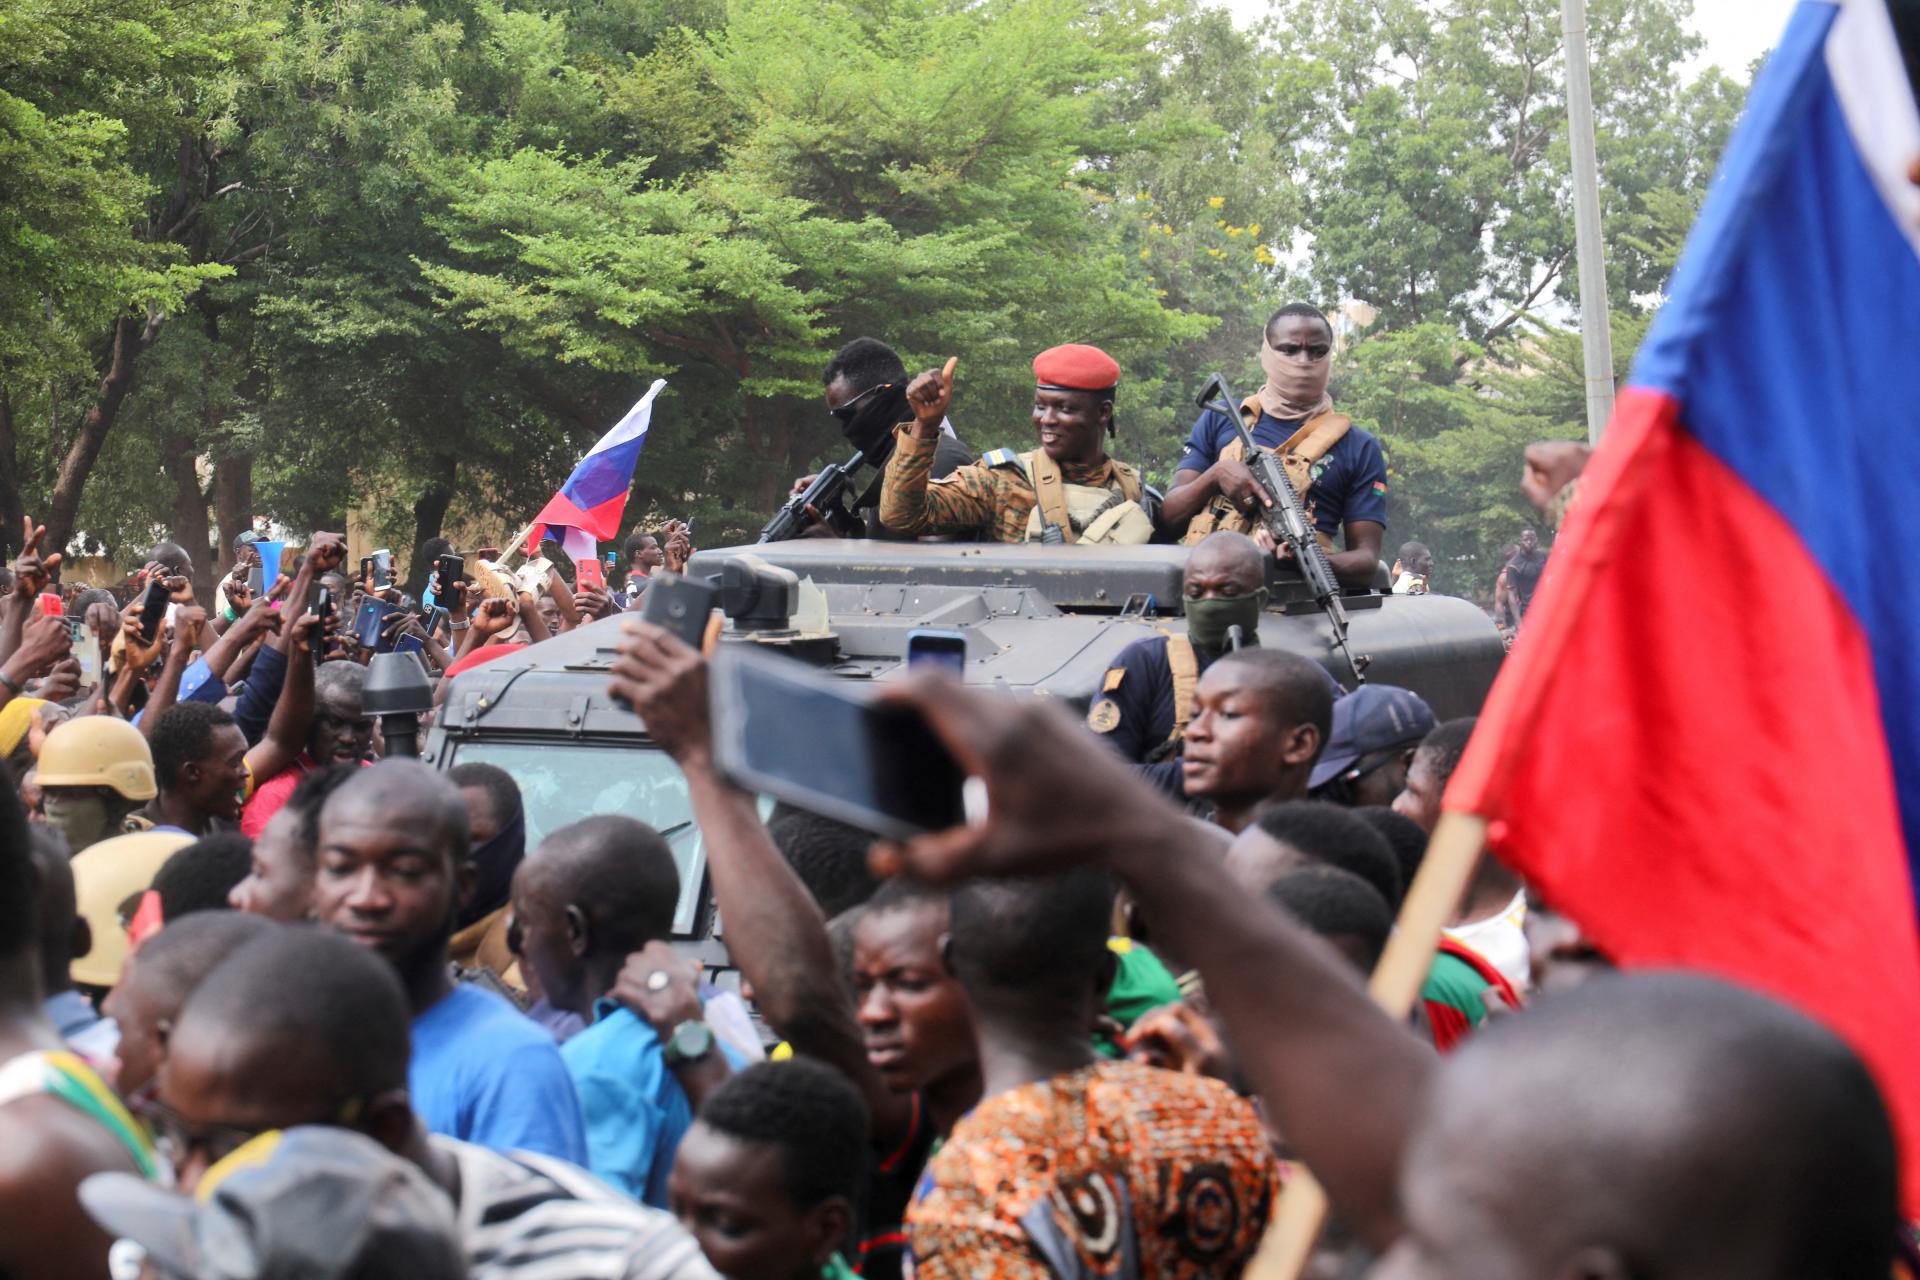 Situácia v Burkine Faso sa podľa pučistov vracia pod kontrolu